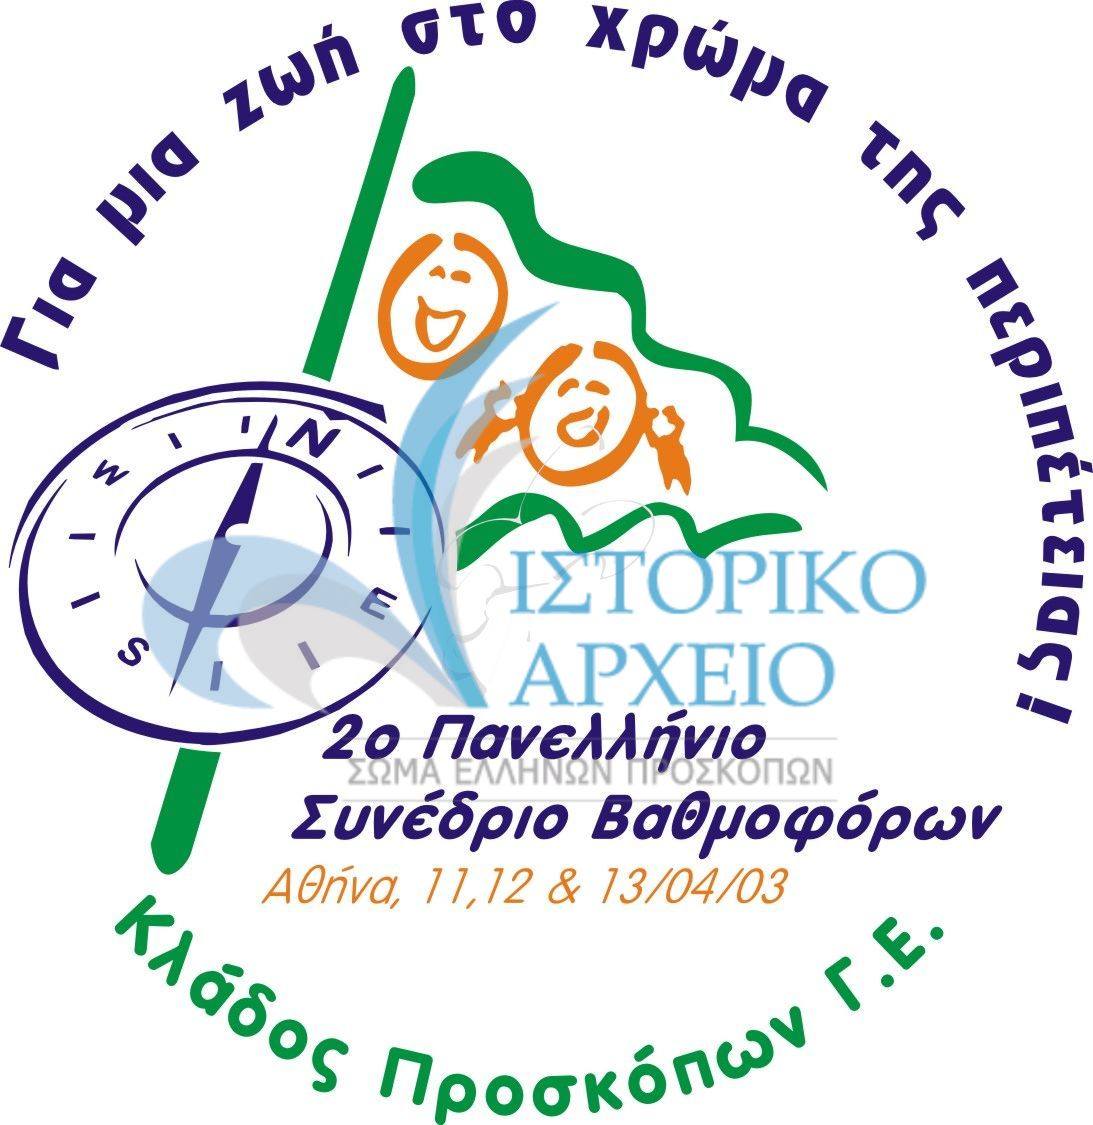 Λογότυπο του 2ου Πανελληνίου Συνεδρίου Βαθμοφόρων Κλάδου Προσκόπων το 2003.